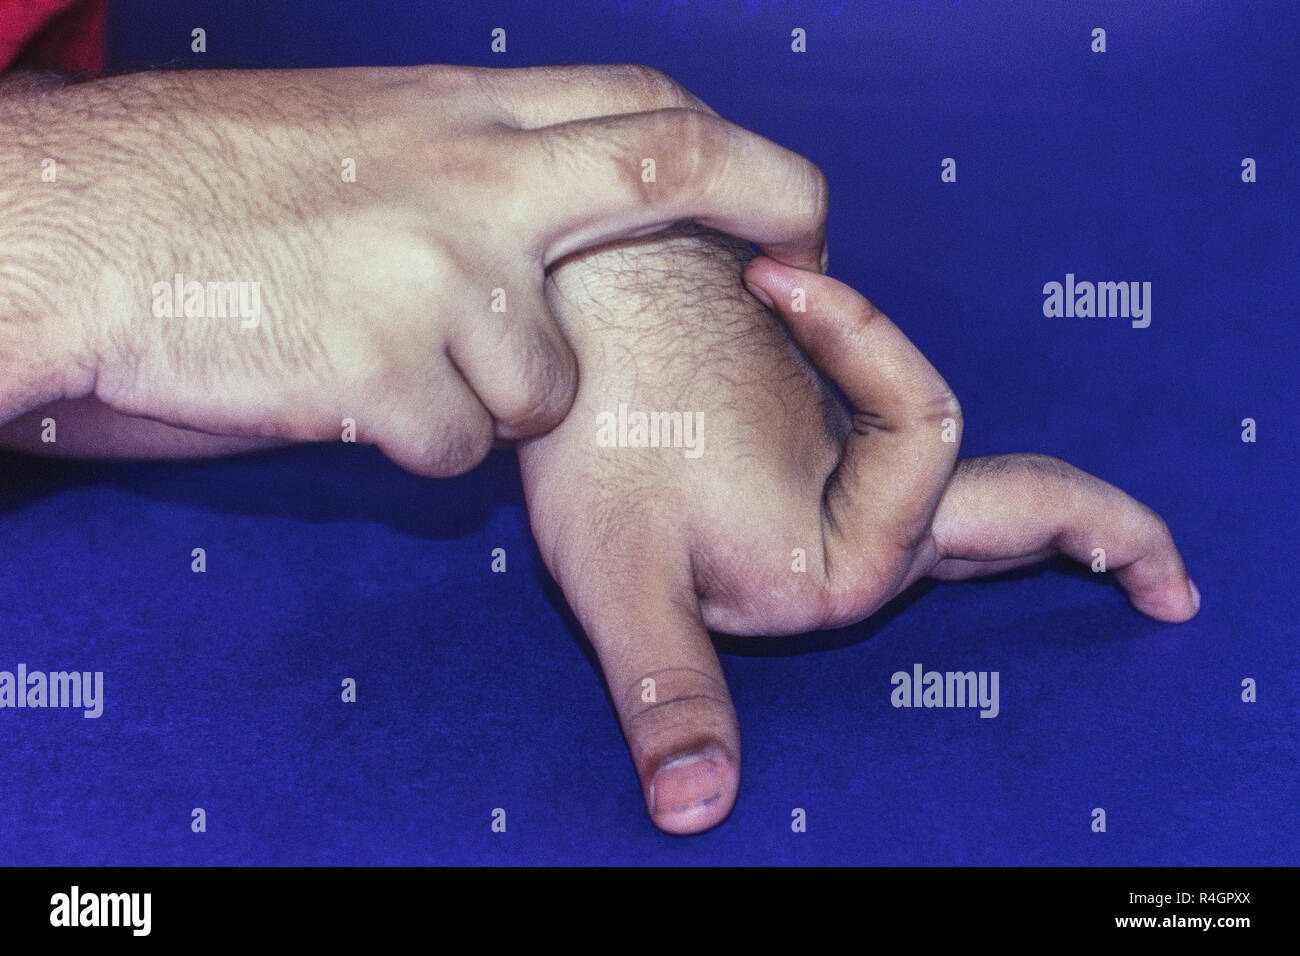 Elastic fingers Hands, Mumbai, India, Asia Stock Photo